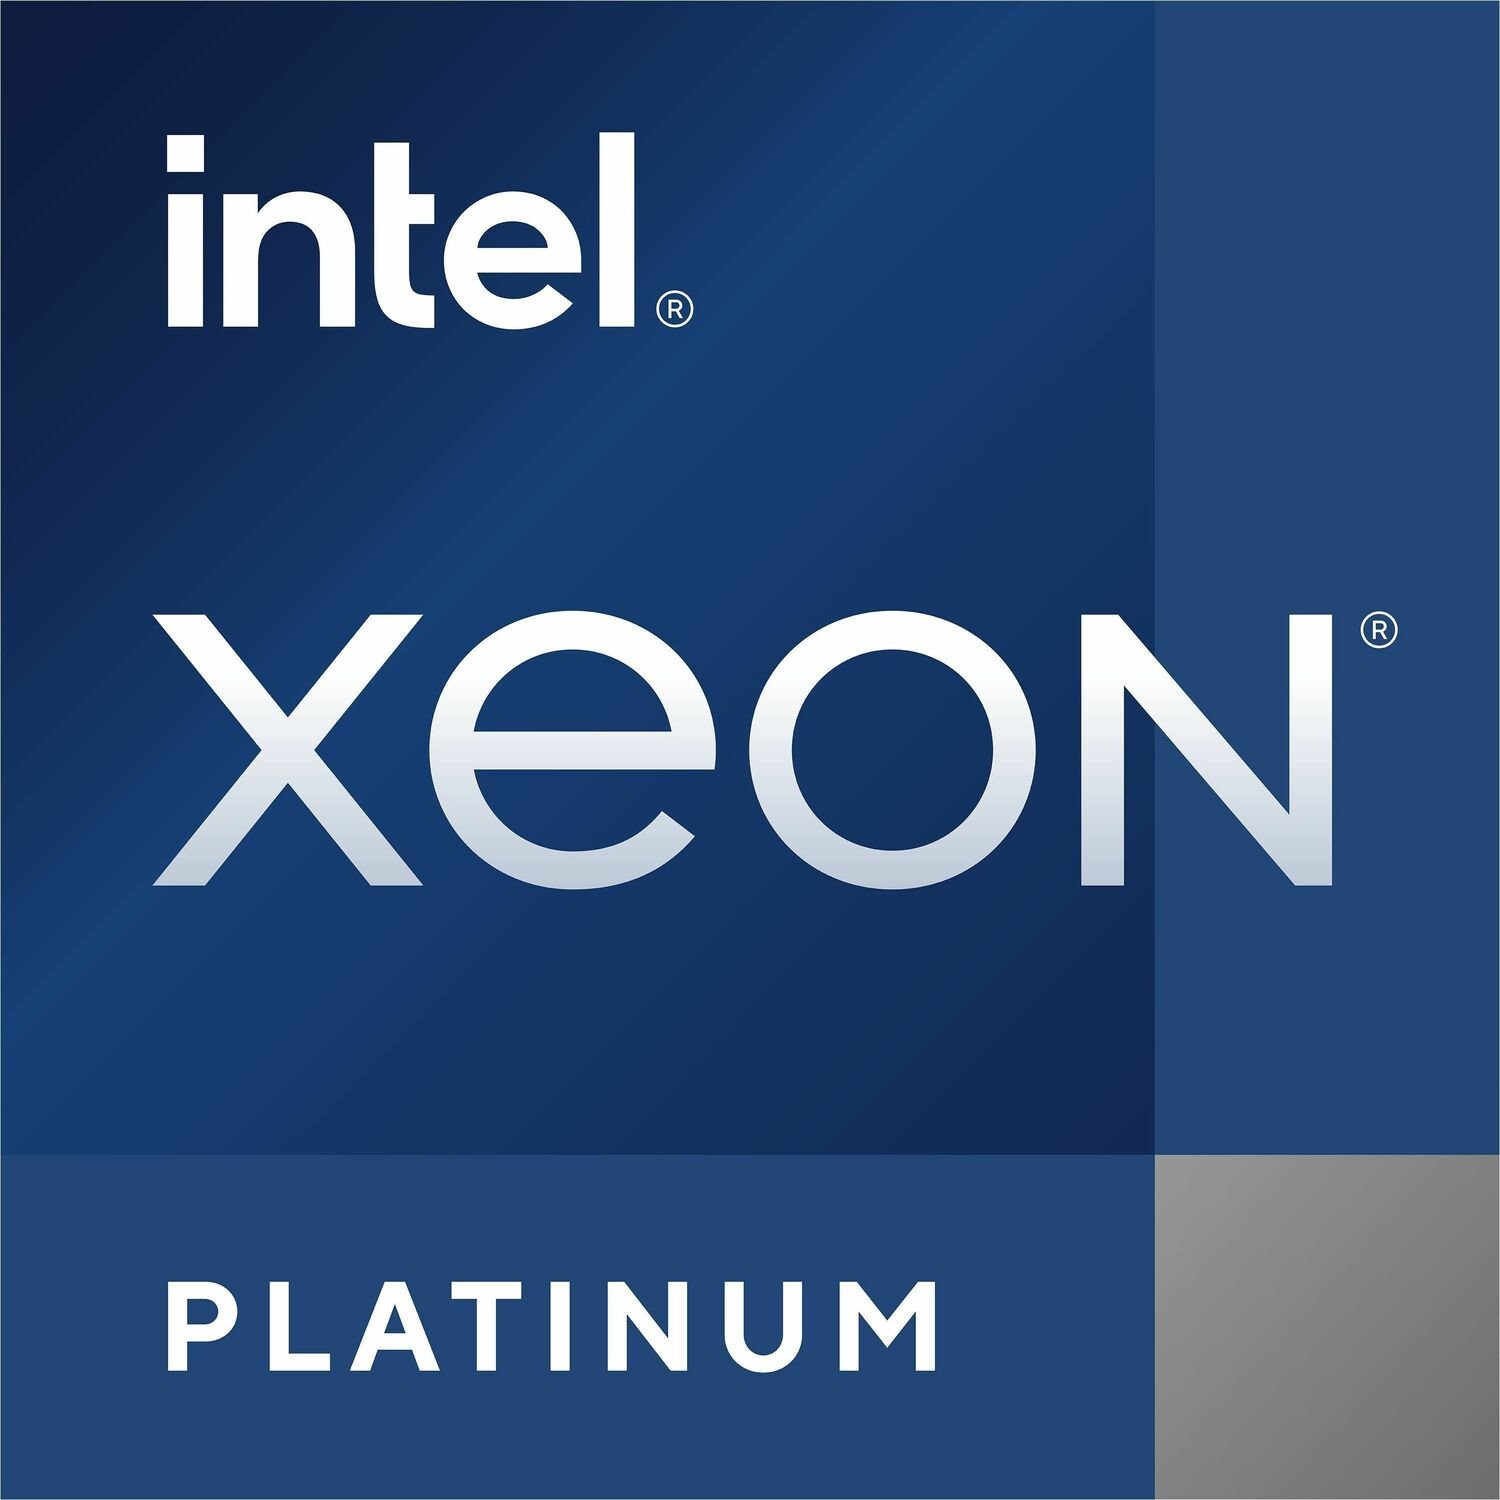 Cisco Intel Xeon Platinum (4th Gen) 8454H Dotriaconta-core (32 Core) 2.10 GHz Processor Upgrade